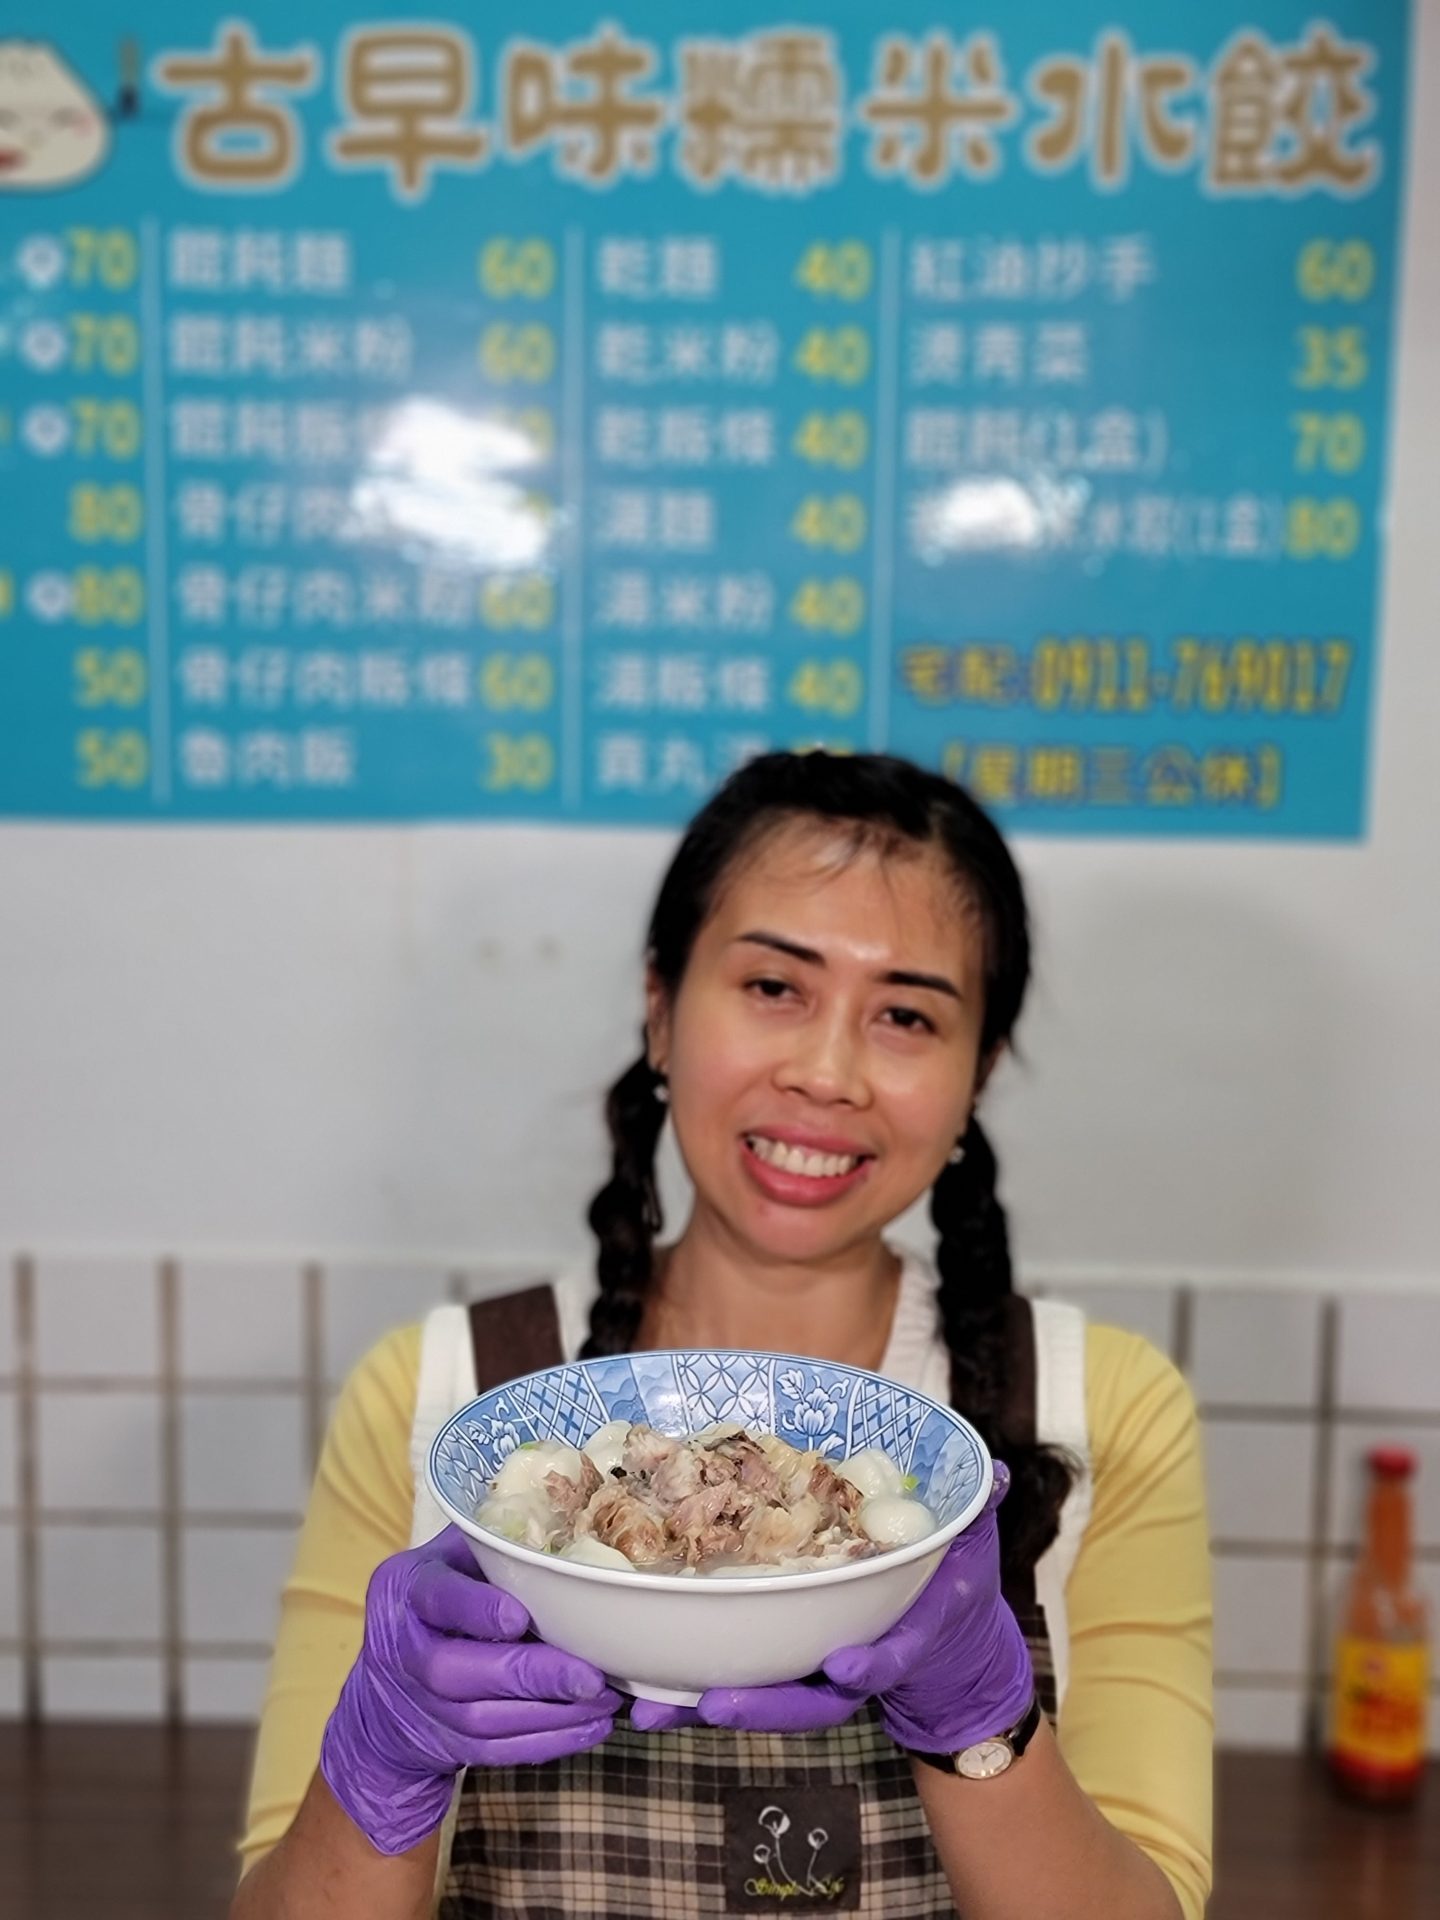 「新竹」中央市場-古早味糯米水餃-位於市場內93號攤位